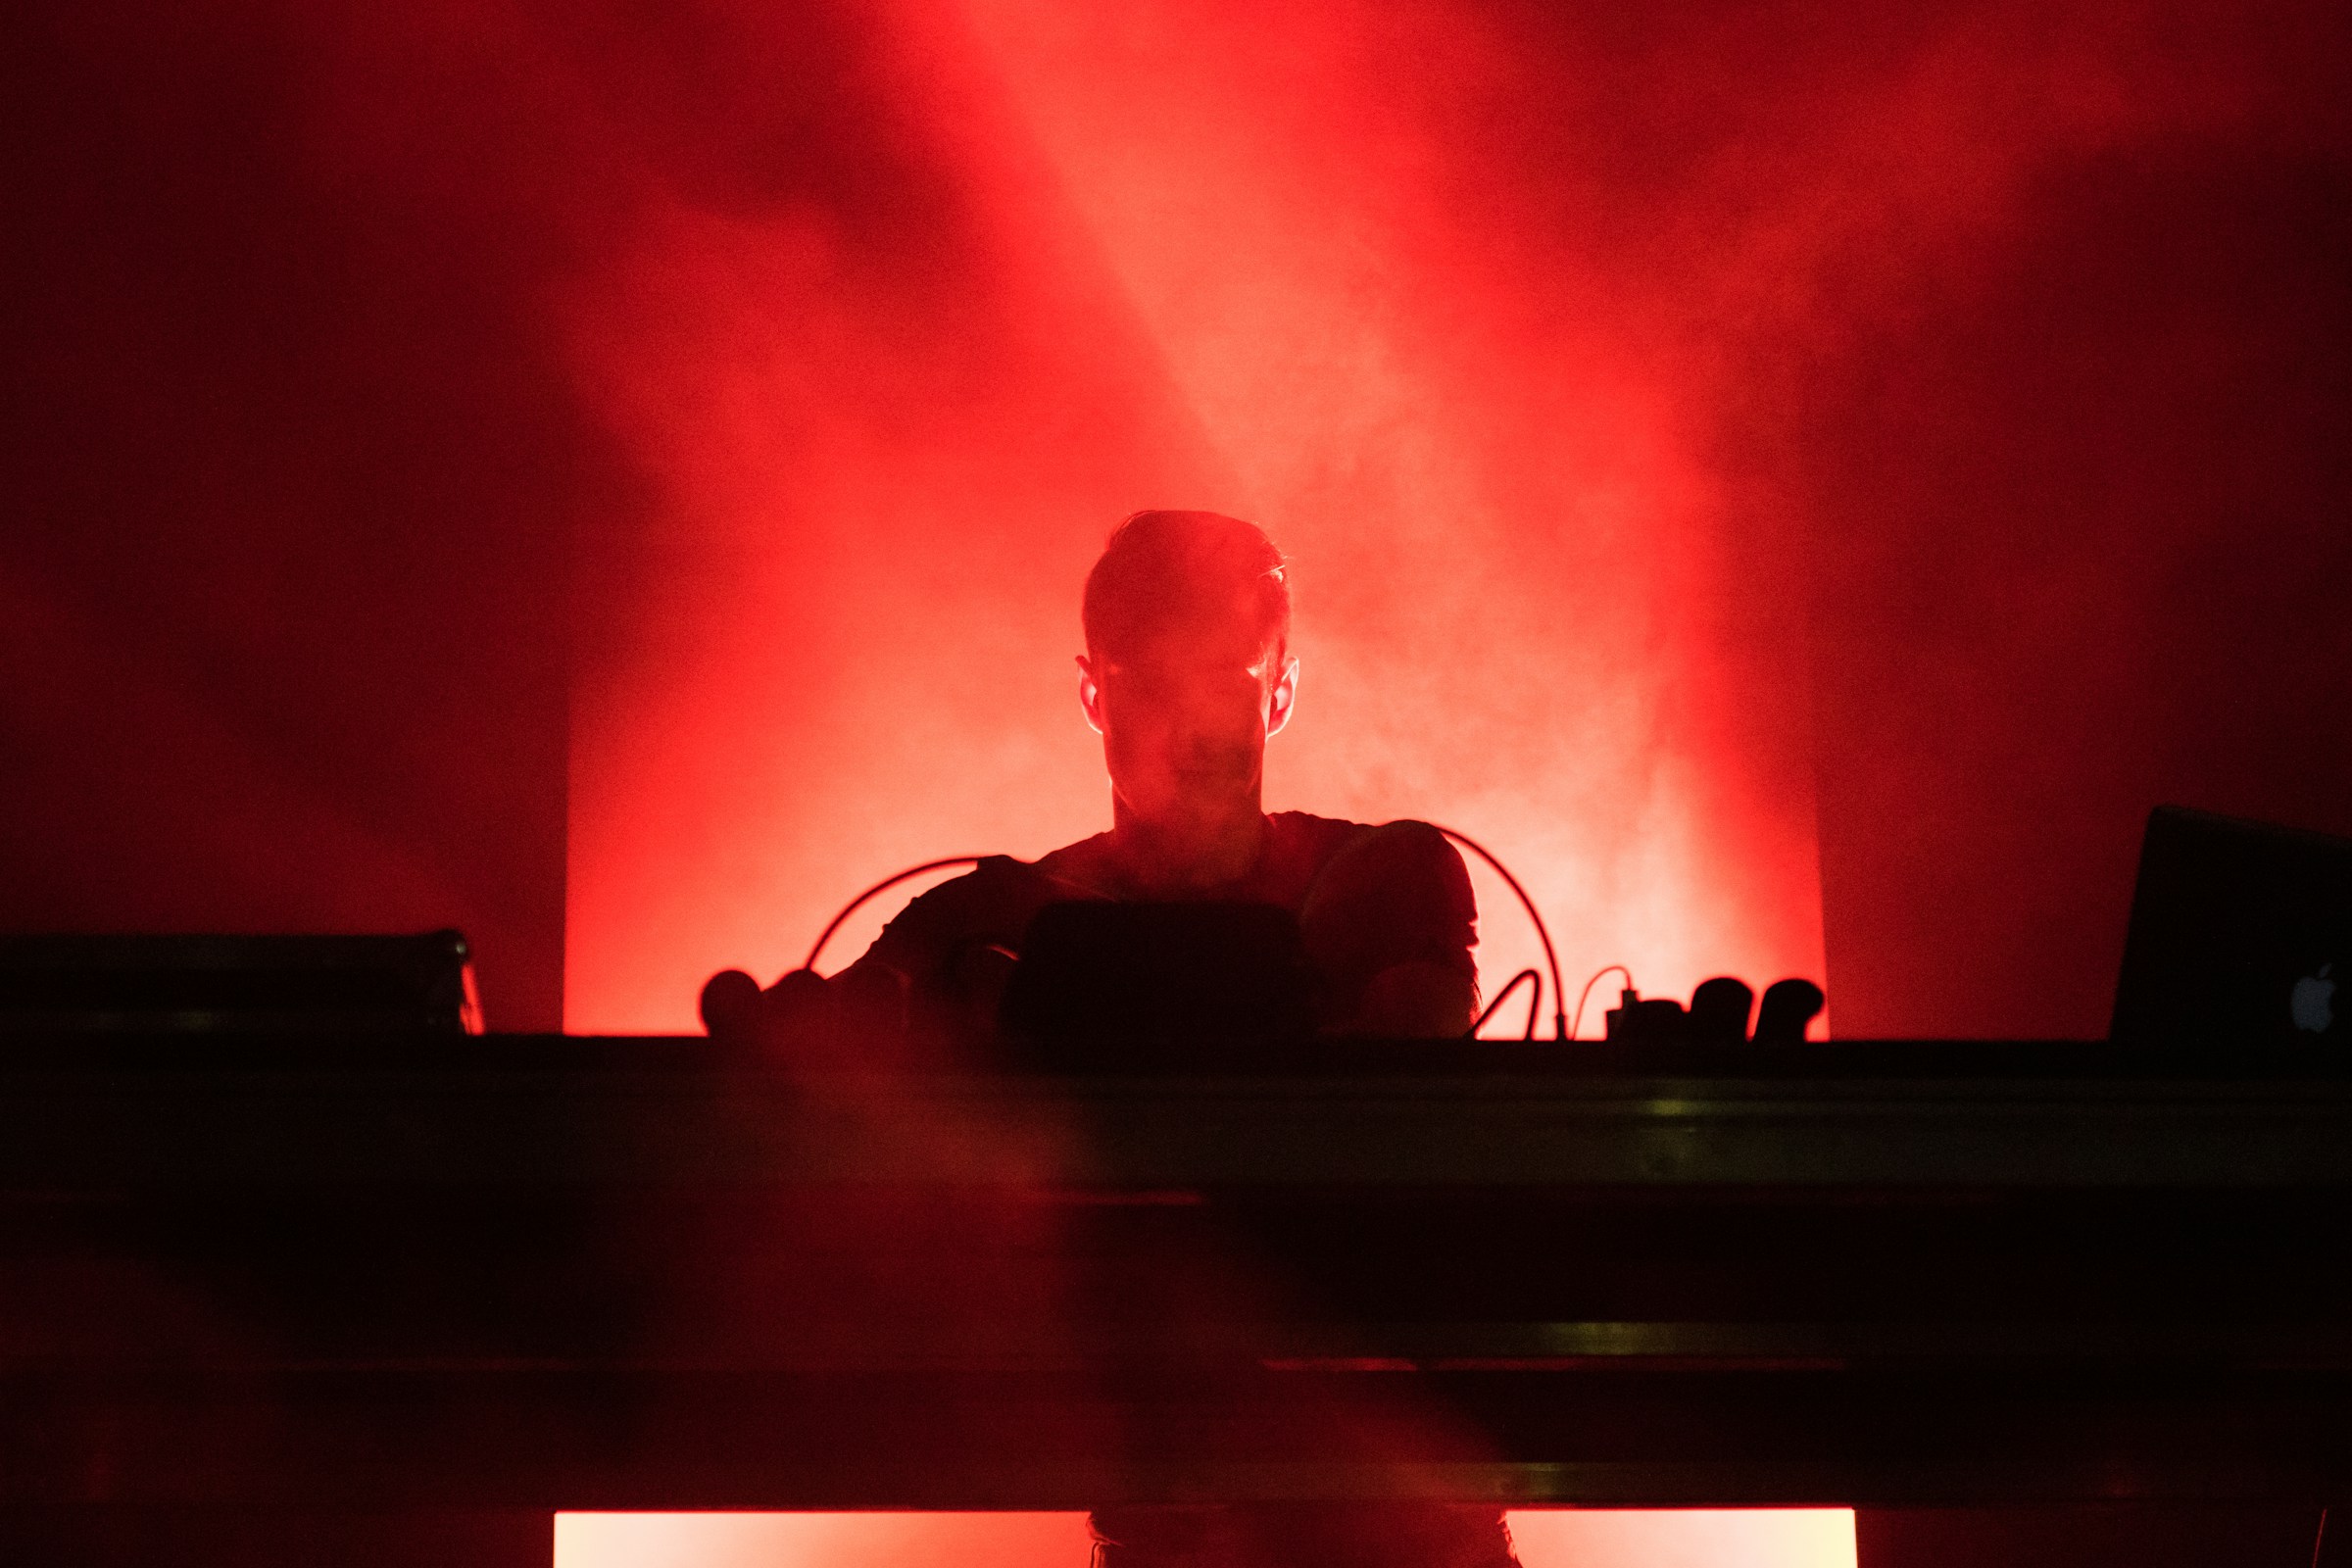 DJ jouant de la musique sous des lumières rouges | Source : Unsplash